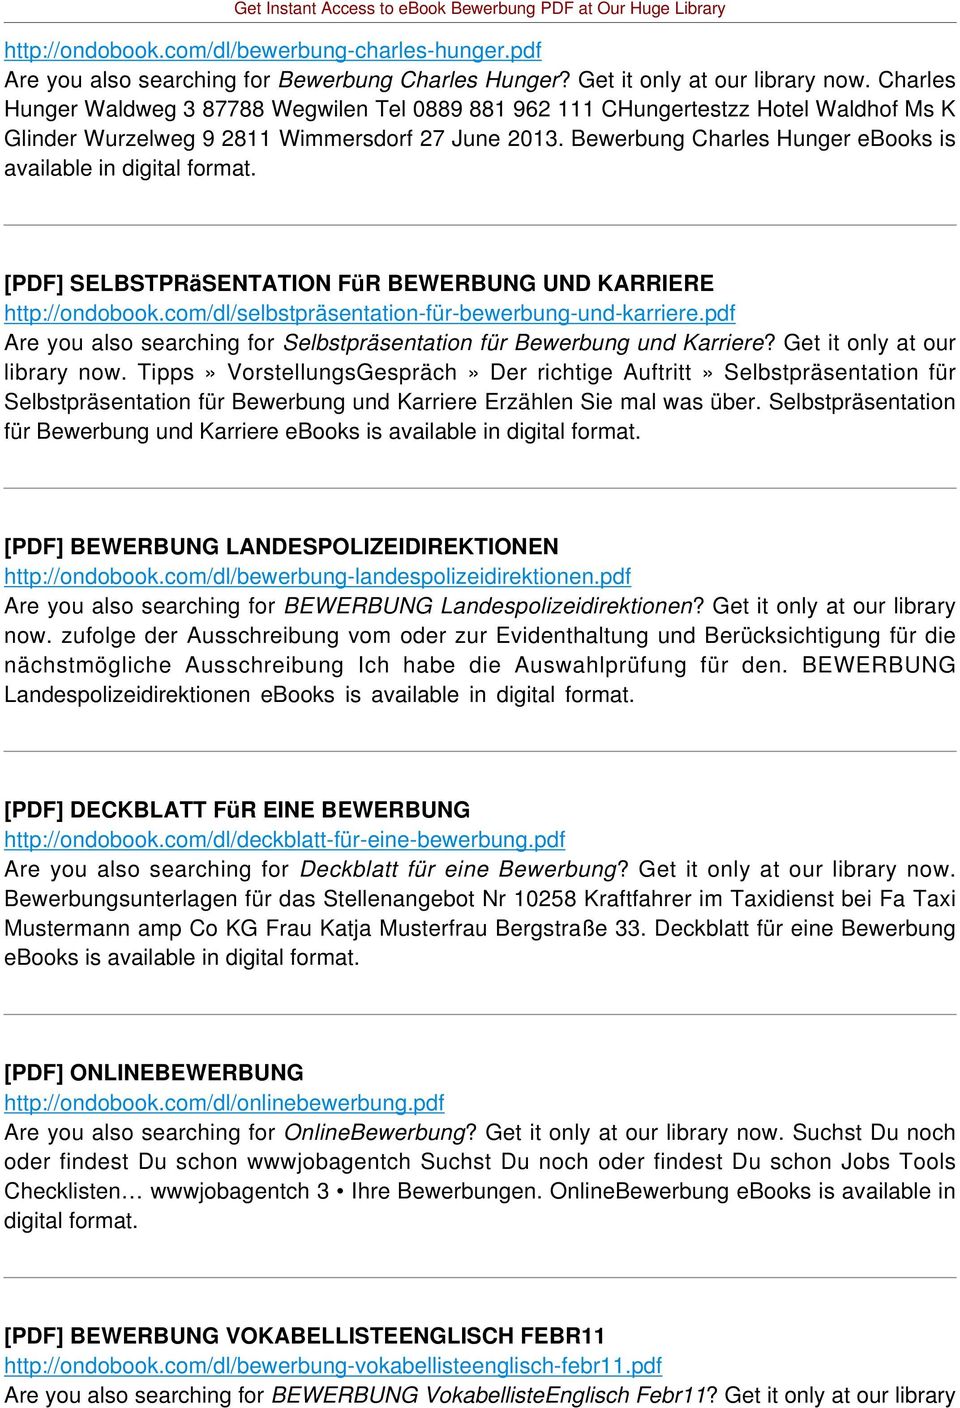 Bewerbung Charles Hunger ebooks is available in digital format. [PDF] SELBSTPRäSENTATION FüR BEWERBUNG UND KARRIERE http://ondobook.com/dl/selbstpräsentation-für-bewerbung-und-karriere.